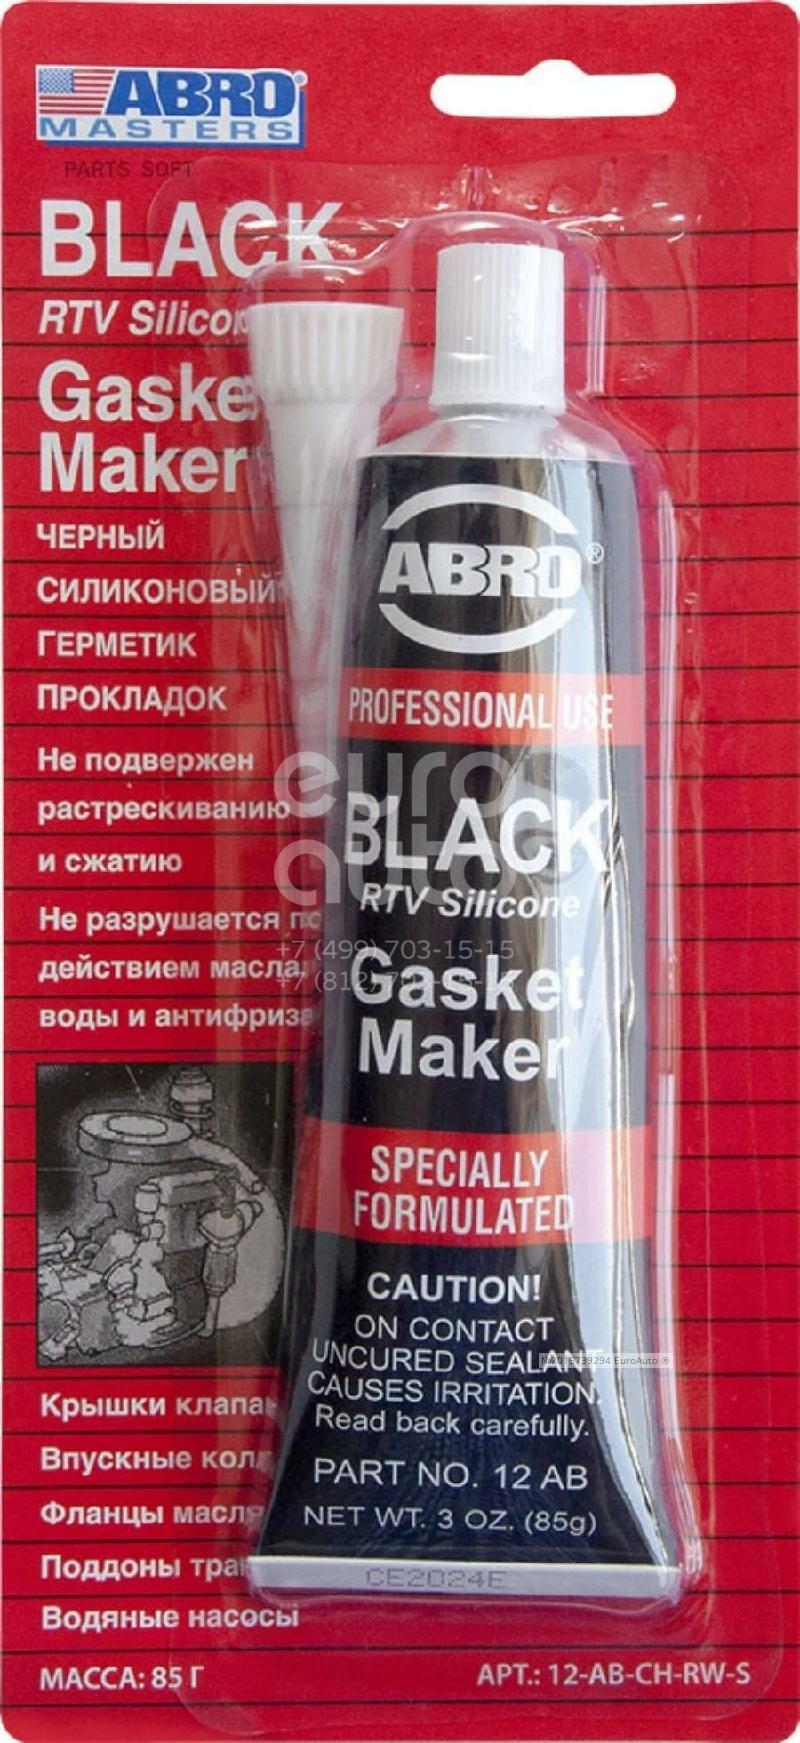 Герметик abro черный. Герметик силиконовый, прокладочный, 85 гр Абро красный. Герметик прокладок abro (85гр) Black. Герметик прокладок т260 черный abro Master 12ab-r. Abro 12-ab-Ch-RW-S.